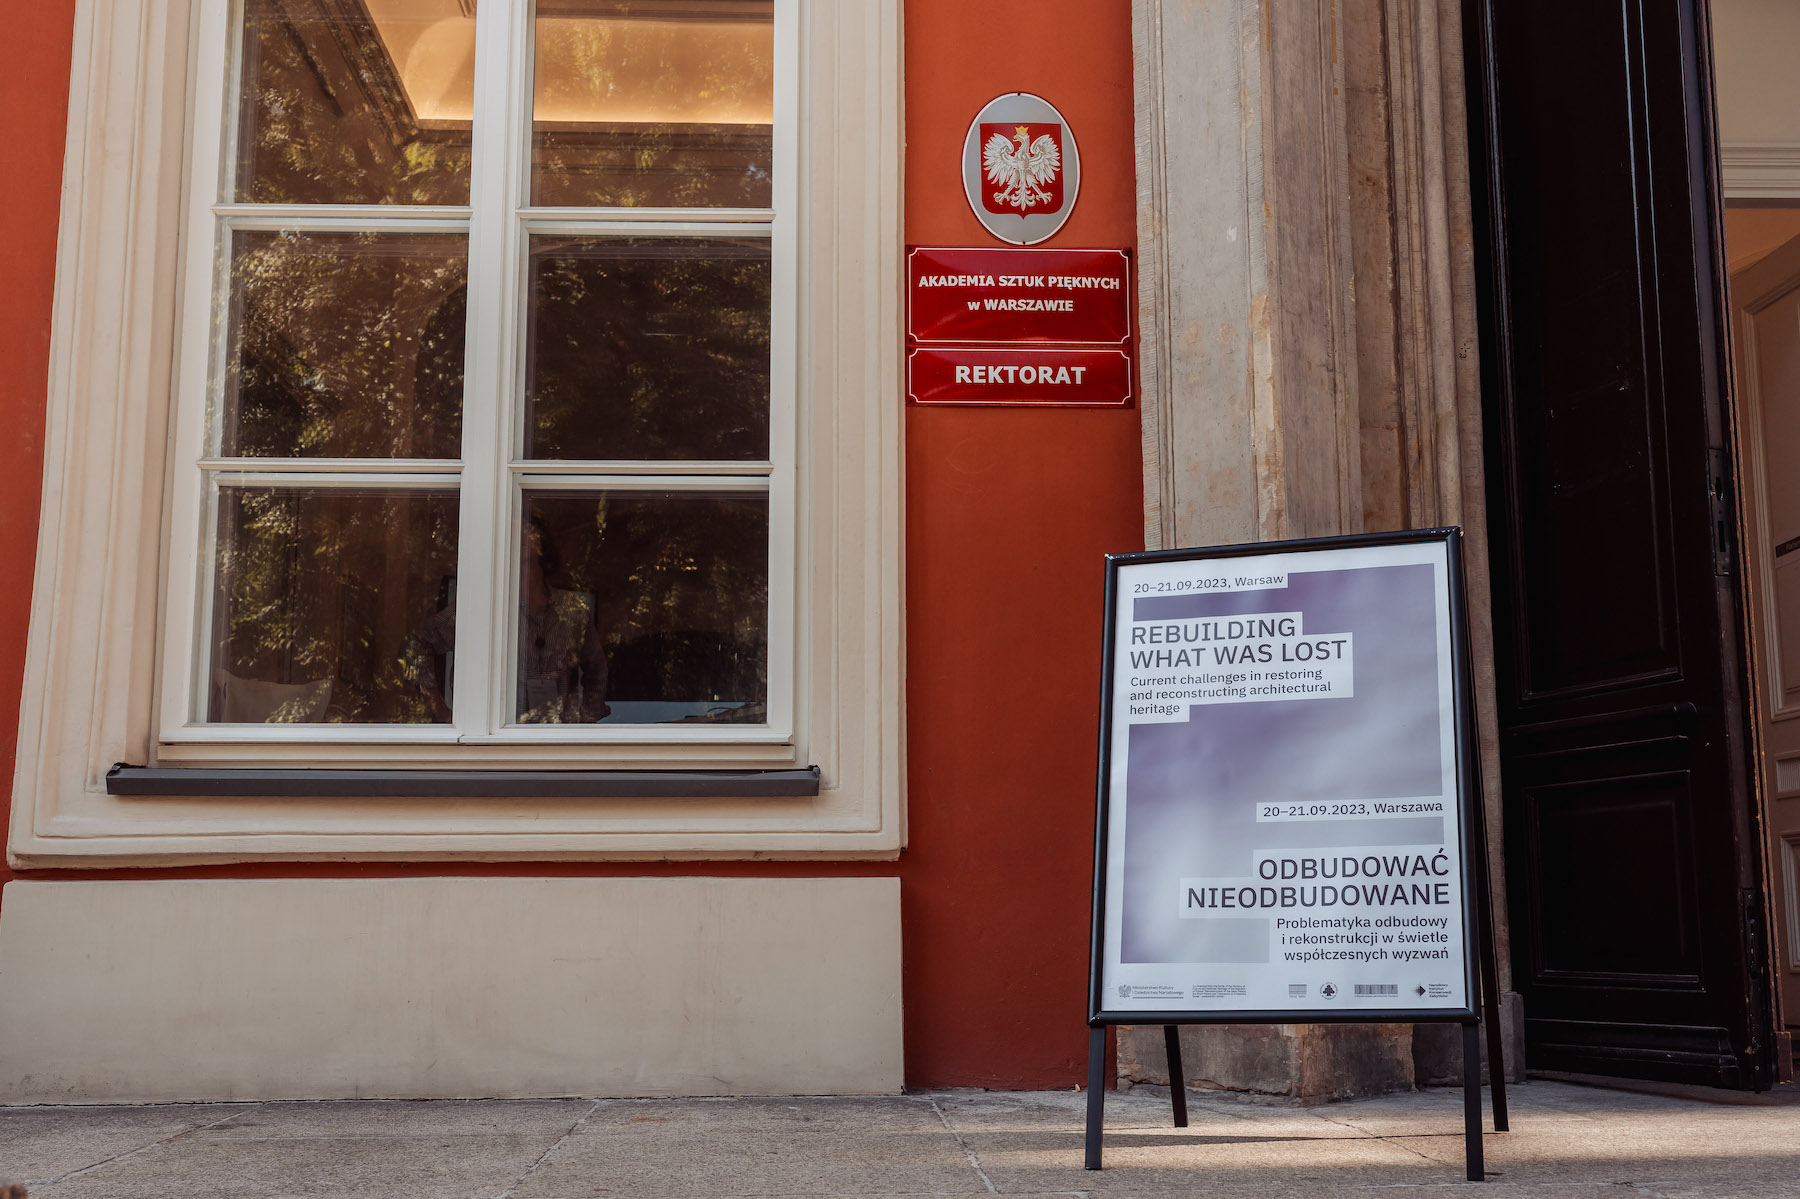 Plakat konferencji Odbudować Nieodbudowane przy wejściu do Akademii Sztuk Pięknych w Warszawie.